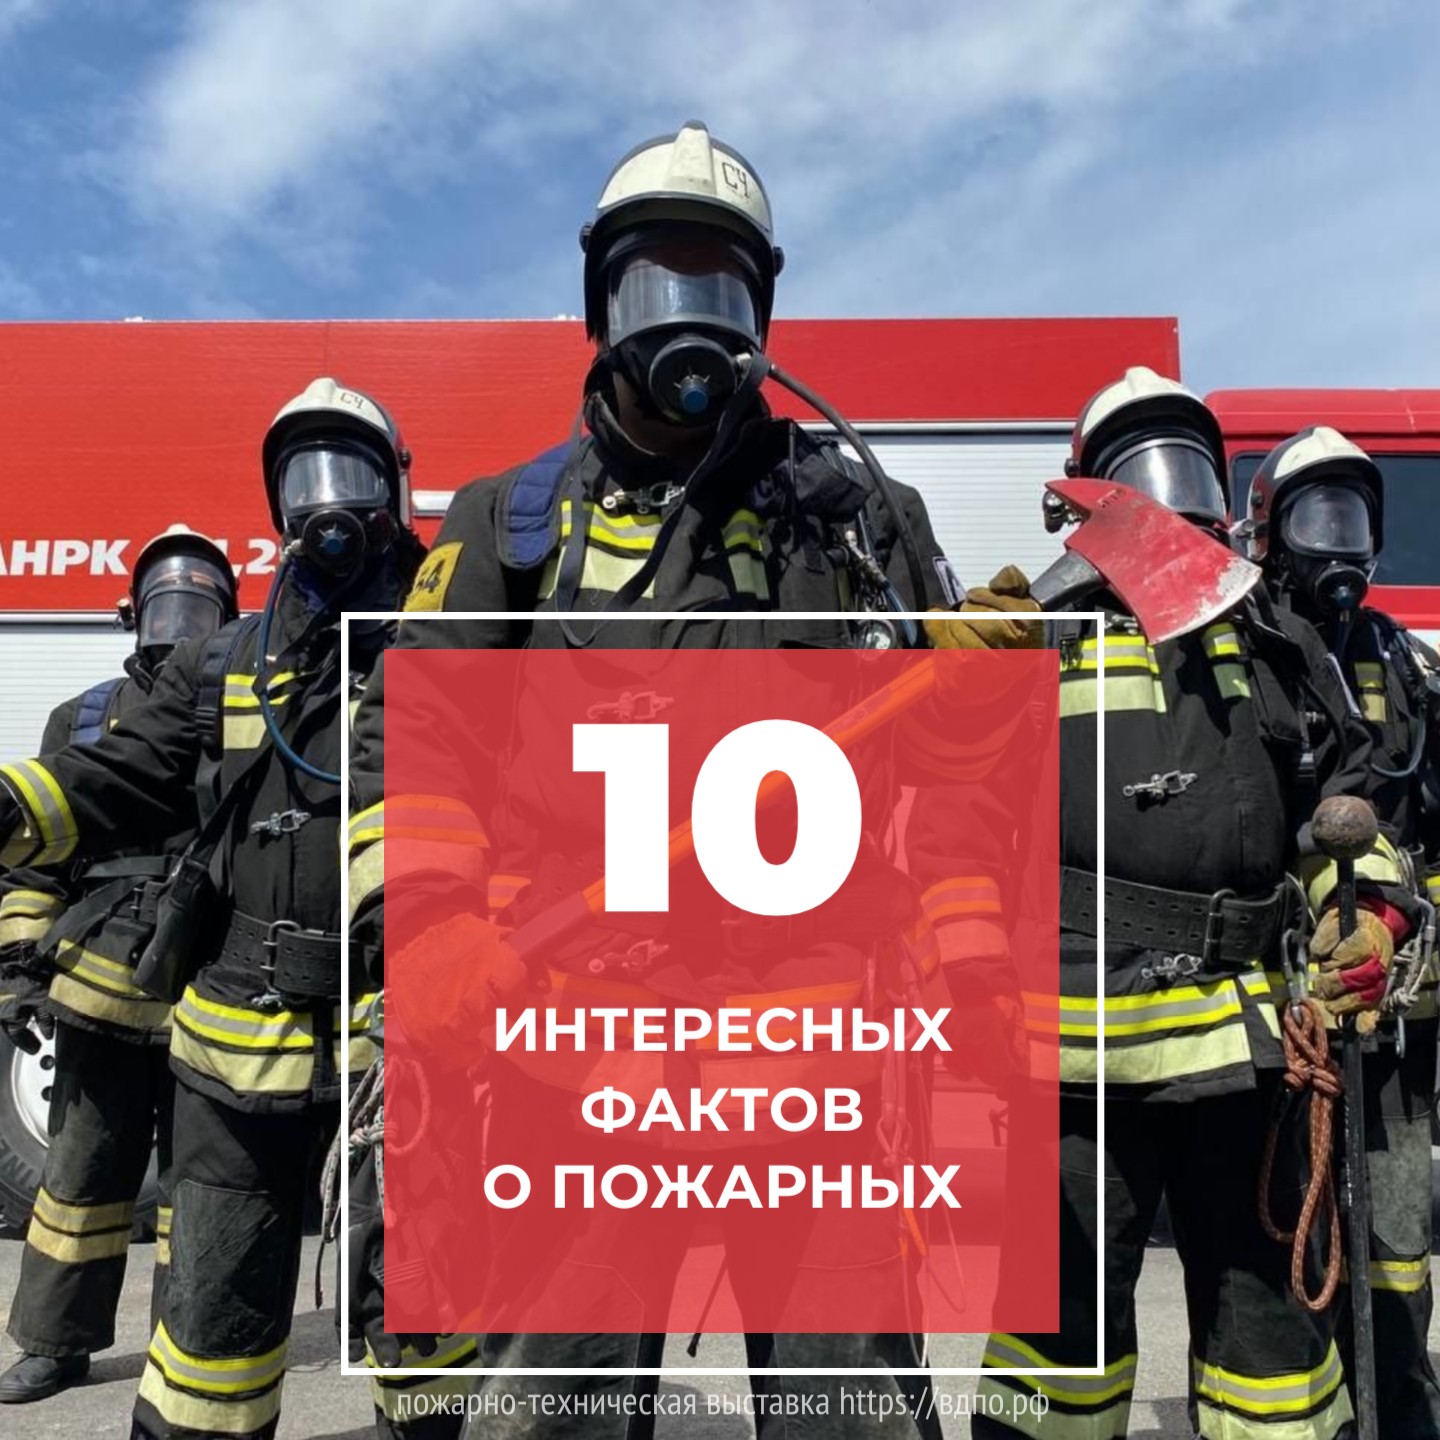 10 интересных фактов о пожарных  Профессия пожарного – благородная, интересная и опасная. За всю историю существования......